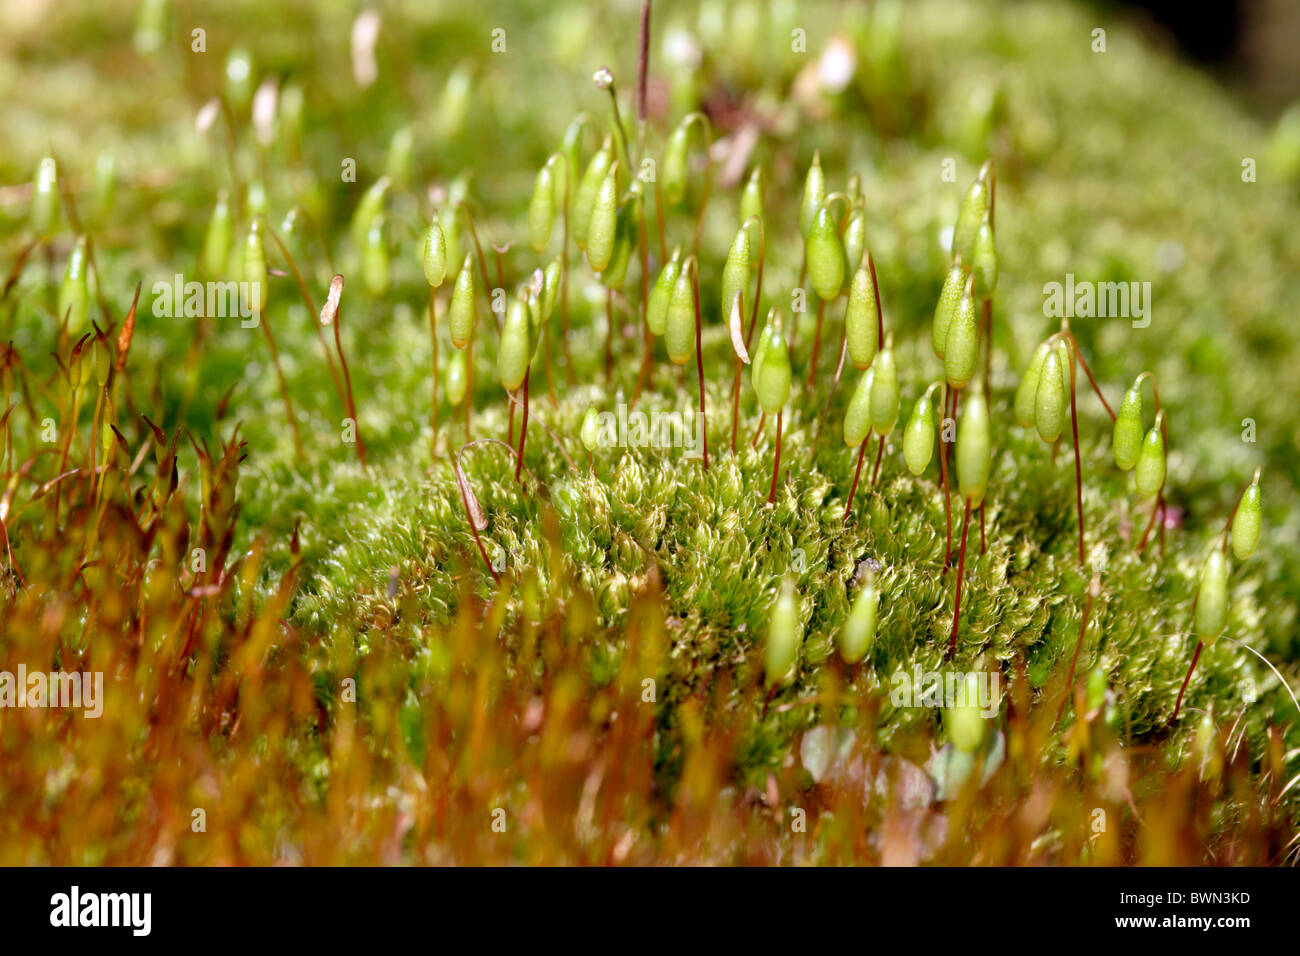 Mayor rosca enmarañada moss (Bryum capillare) con cápsulas de esporas Foto de stock